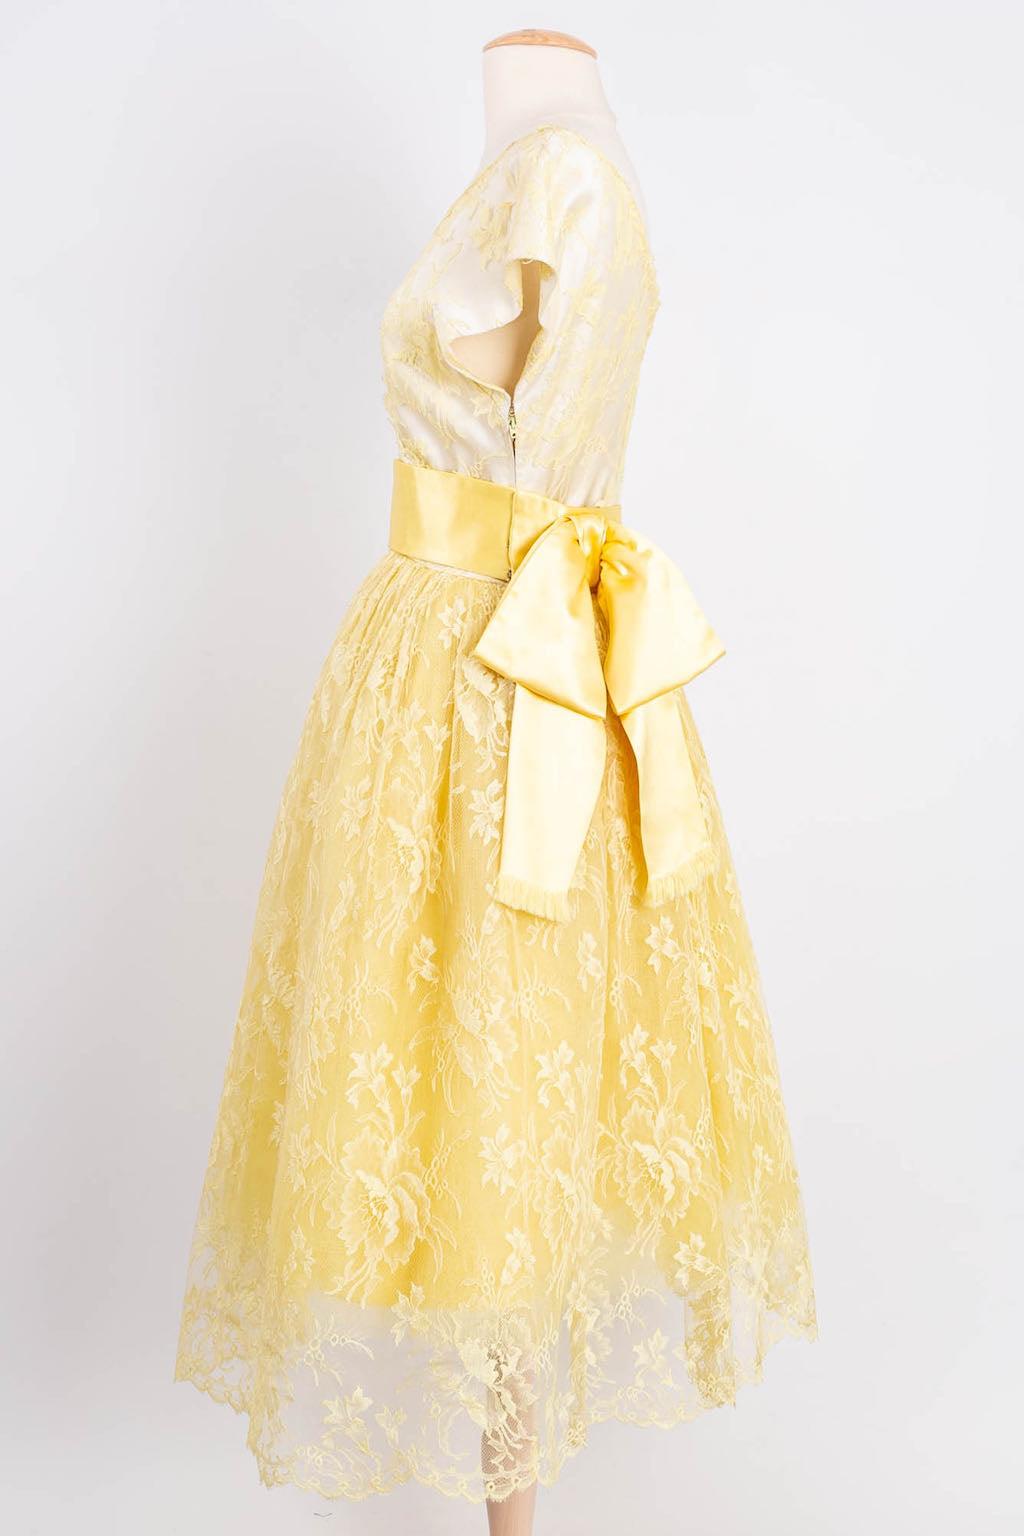 Jeanne Lanvin By Castillo - Robe en dentelle jaune avec une ceinture en soie jaune. Vers les années 1950. Pas de composition ni d'étiquette de taille, il convient à une taille 36FR.

Informations complémentaires : 
Dimensions : Épaules : 40 cm